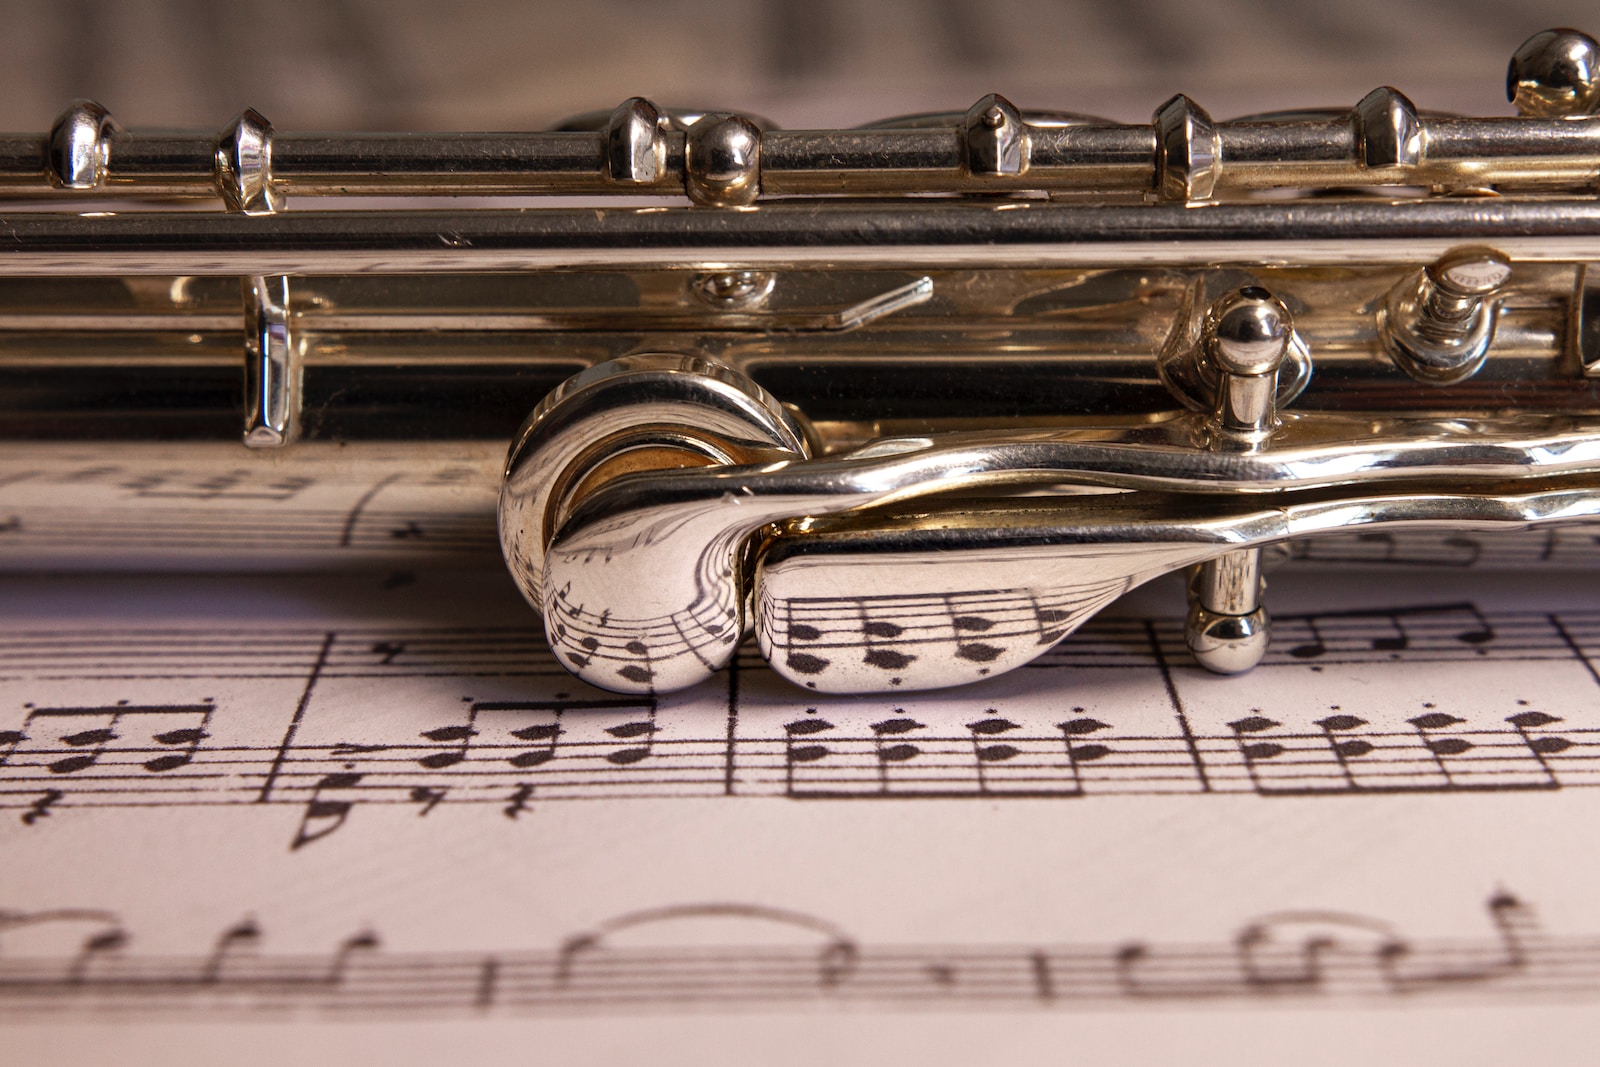 Comment apprendre à jouer de la flûte traversière : le guide complet 